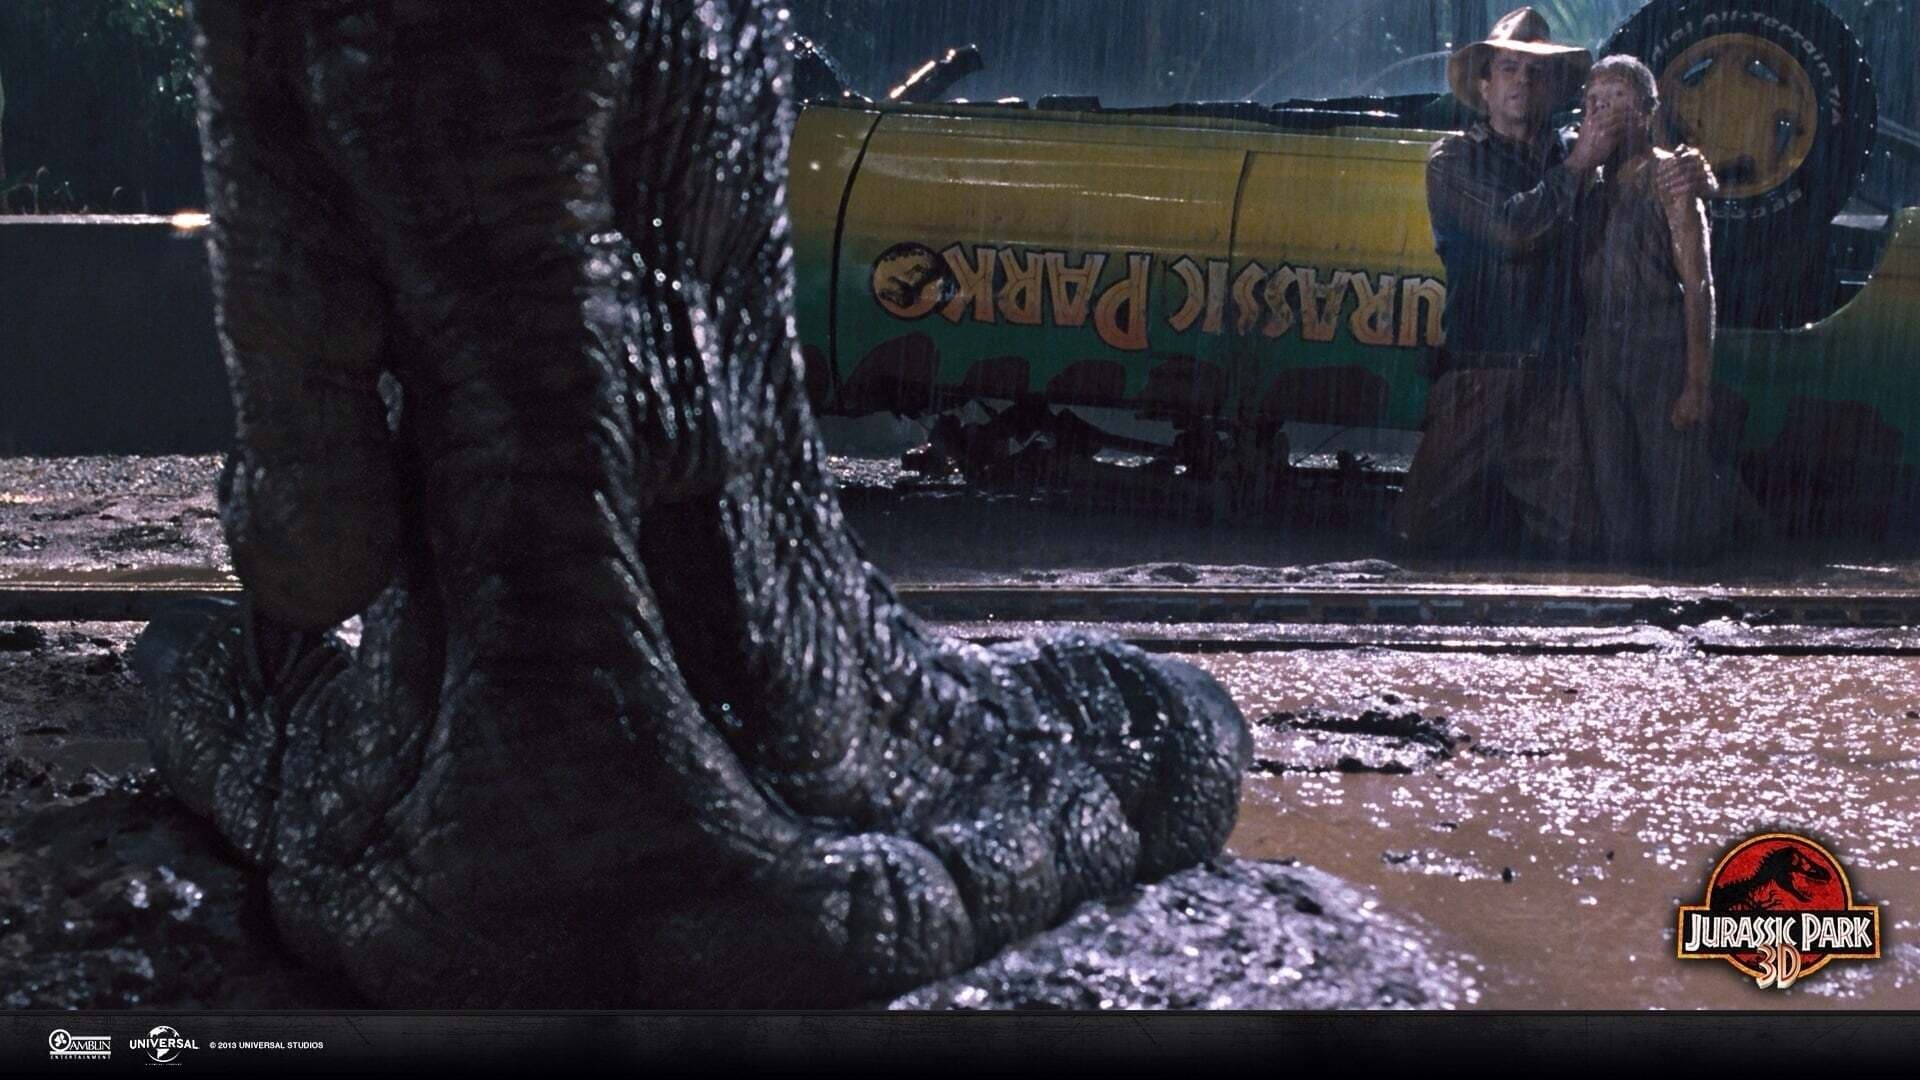 Image du film Jurassic Park 8u4jojotygrbzd8ttxiezgp0h6jjpg